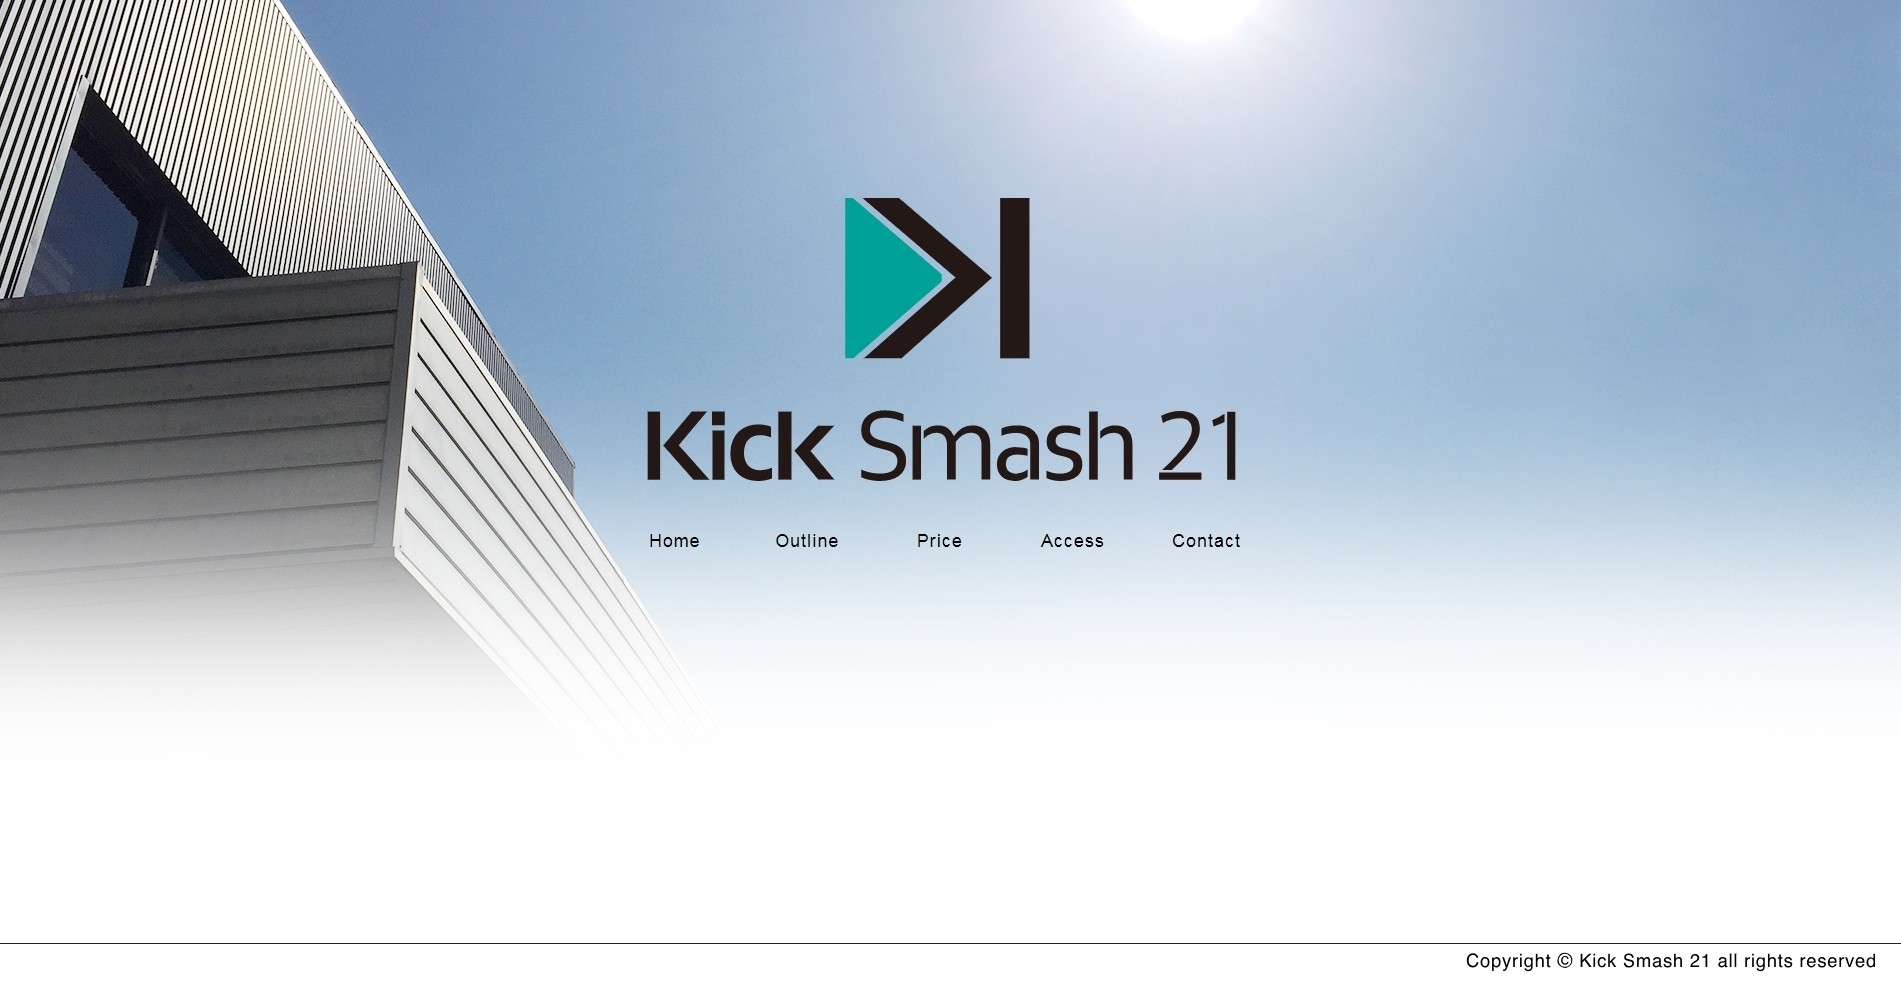 株式会社Kick Smash 21の株式会社Kick Smash 21サービス